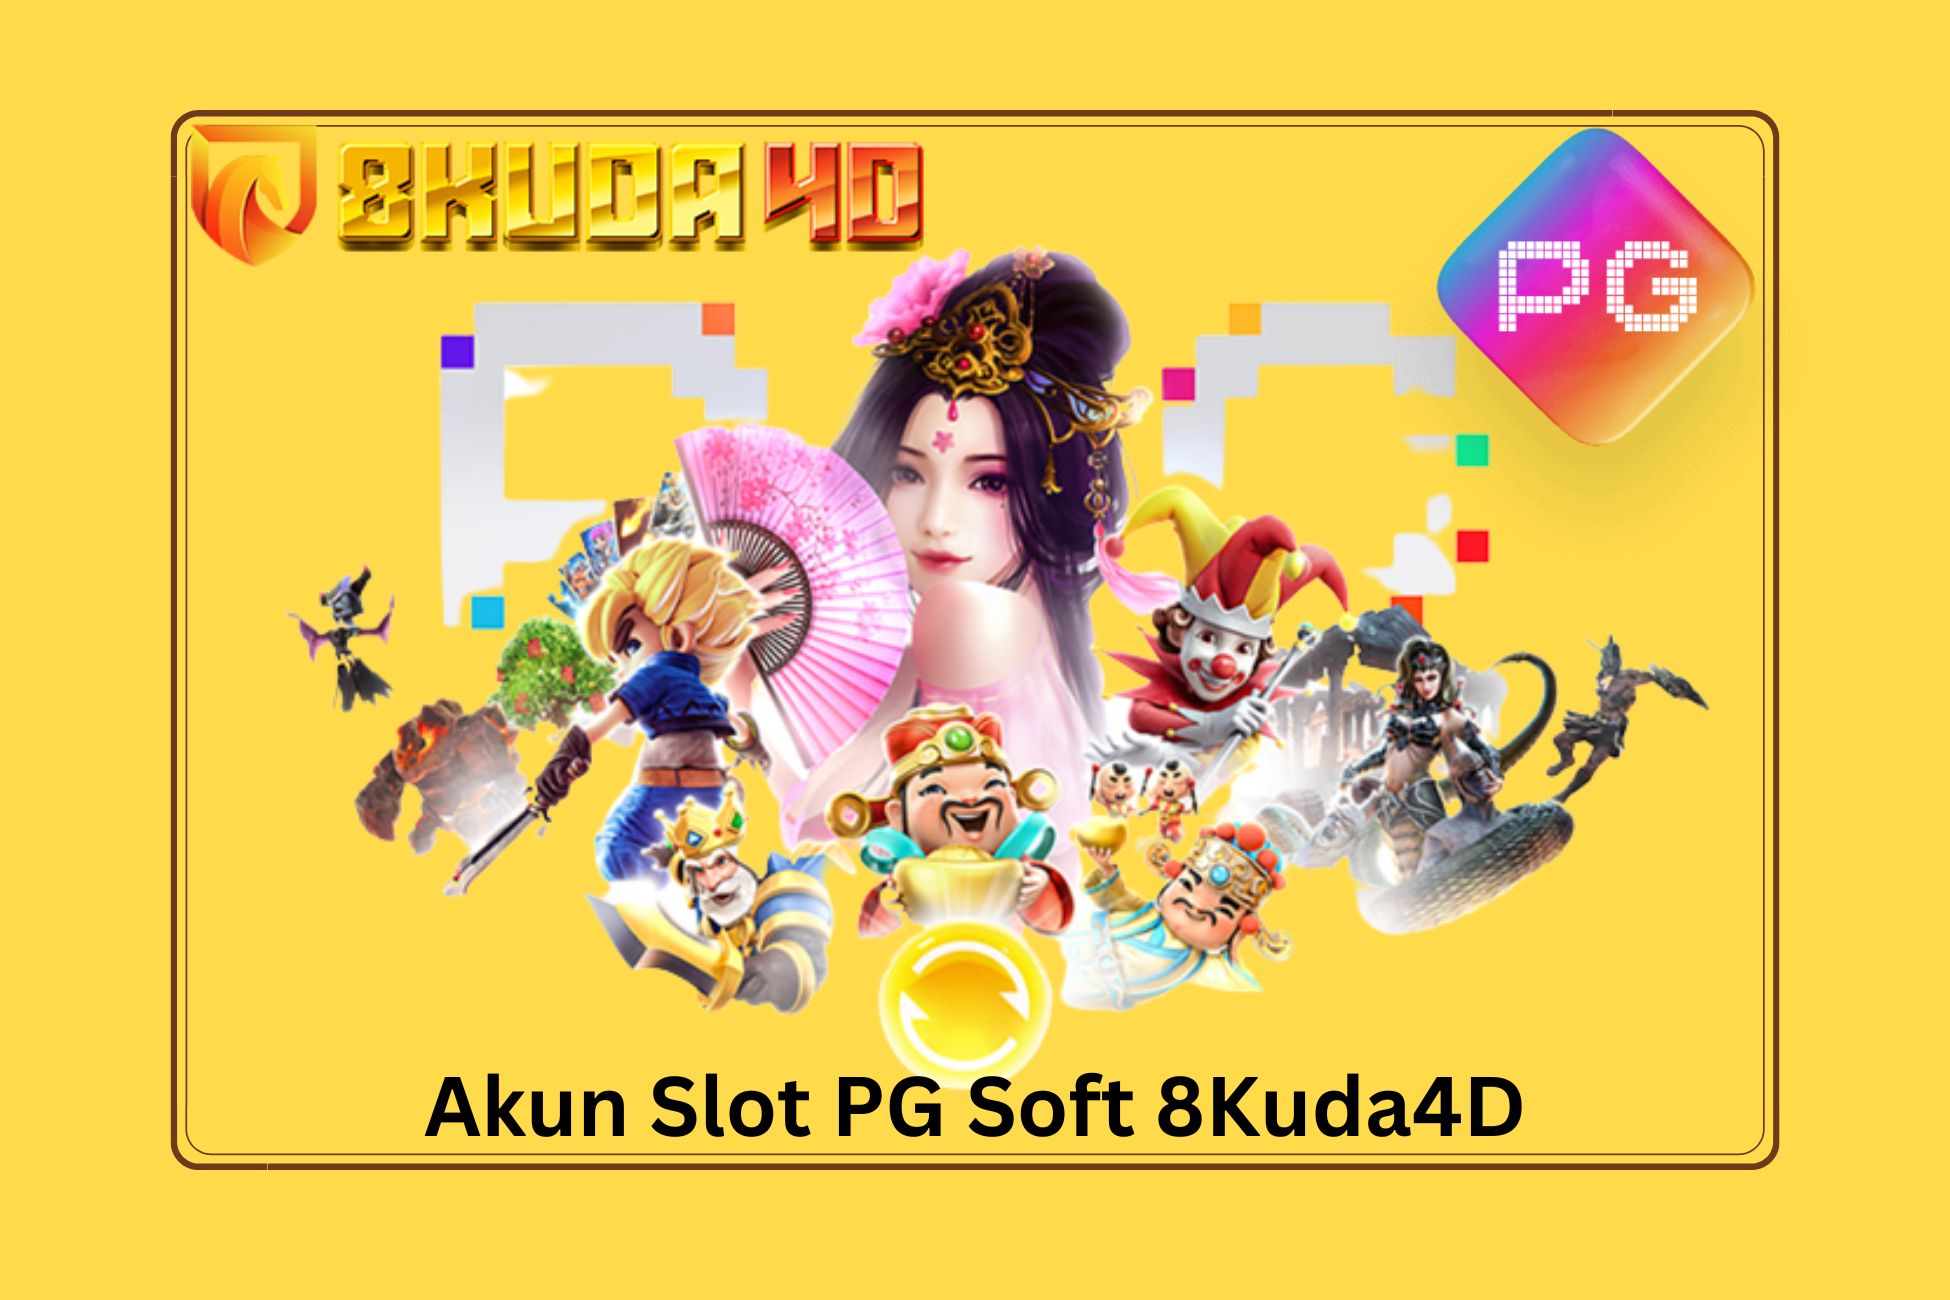 Akun Slot PG Soft 8Kuda4D